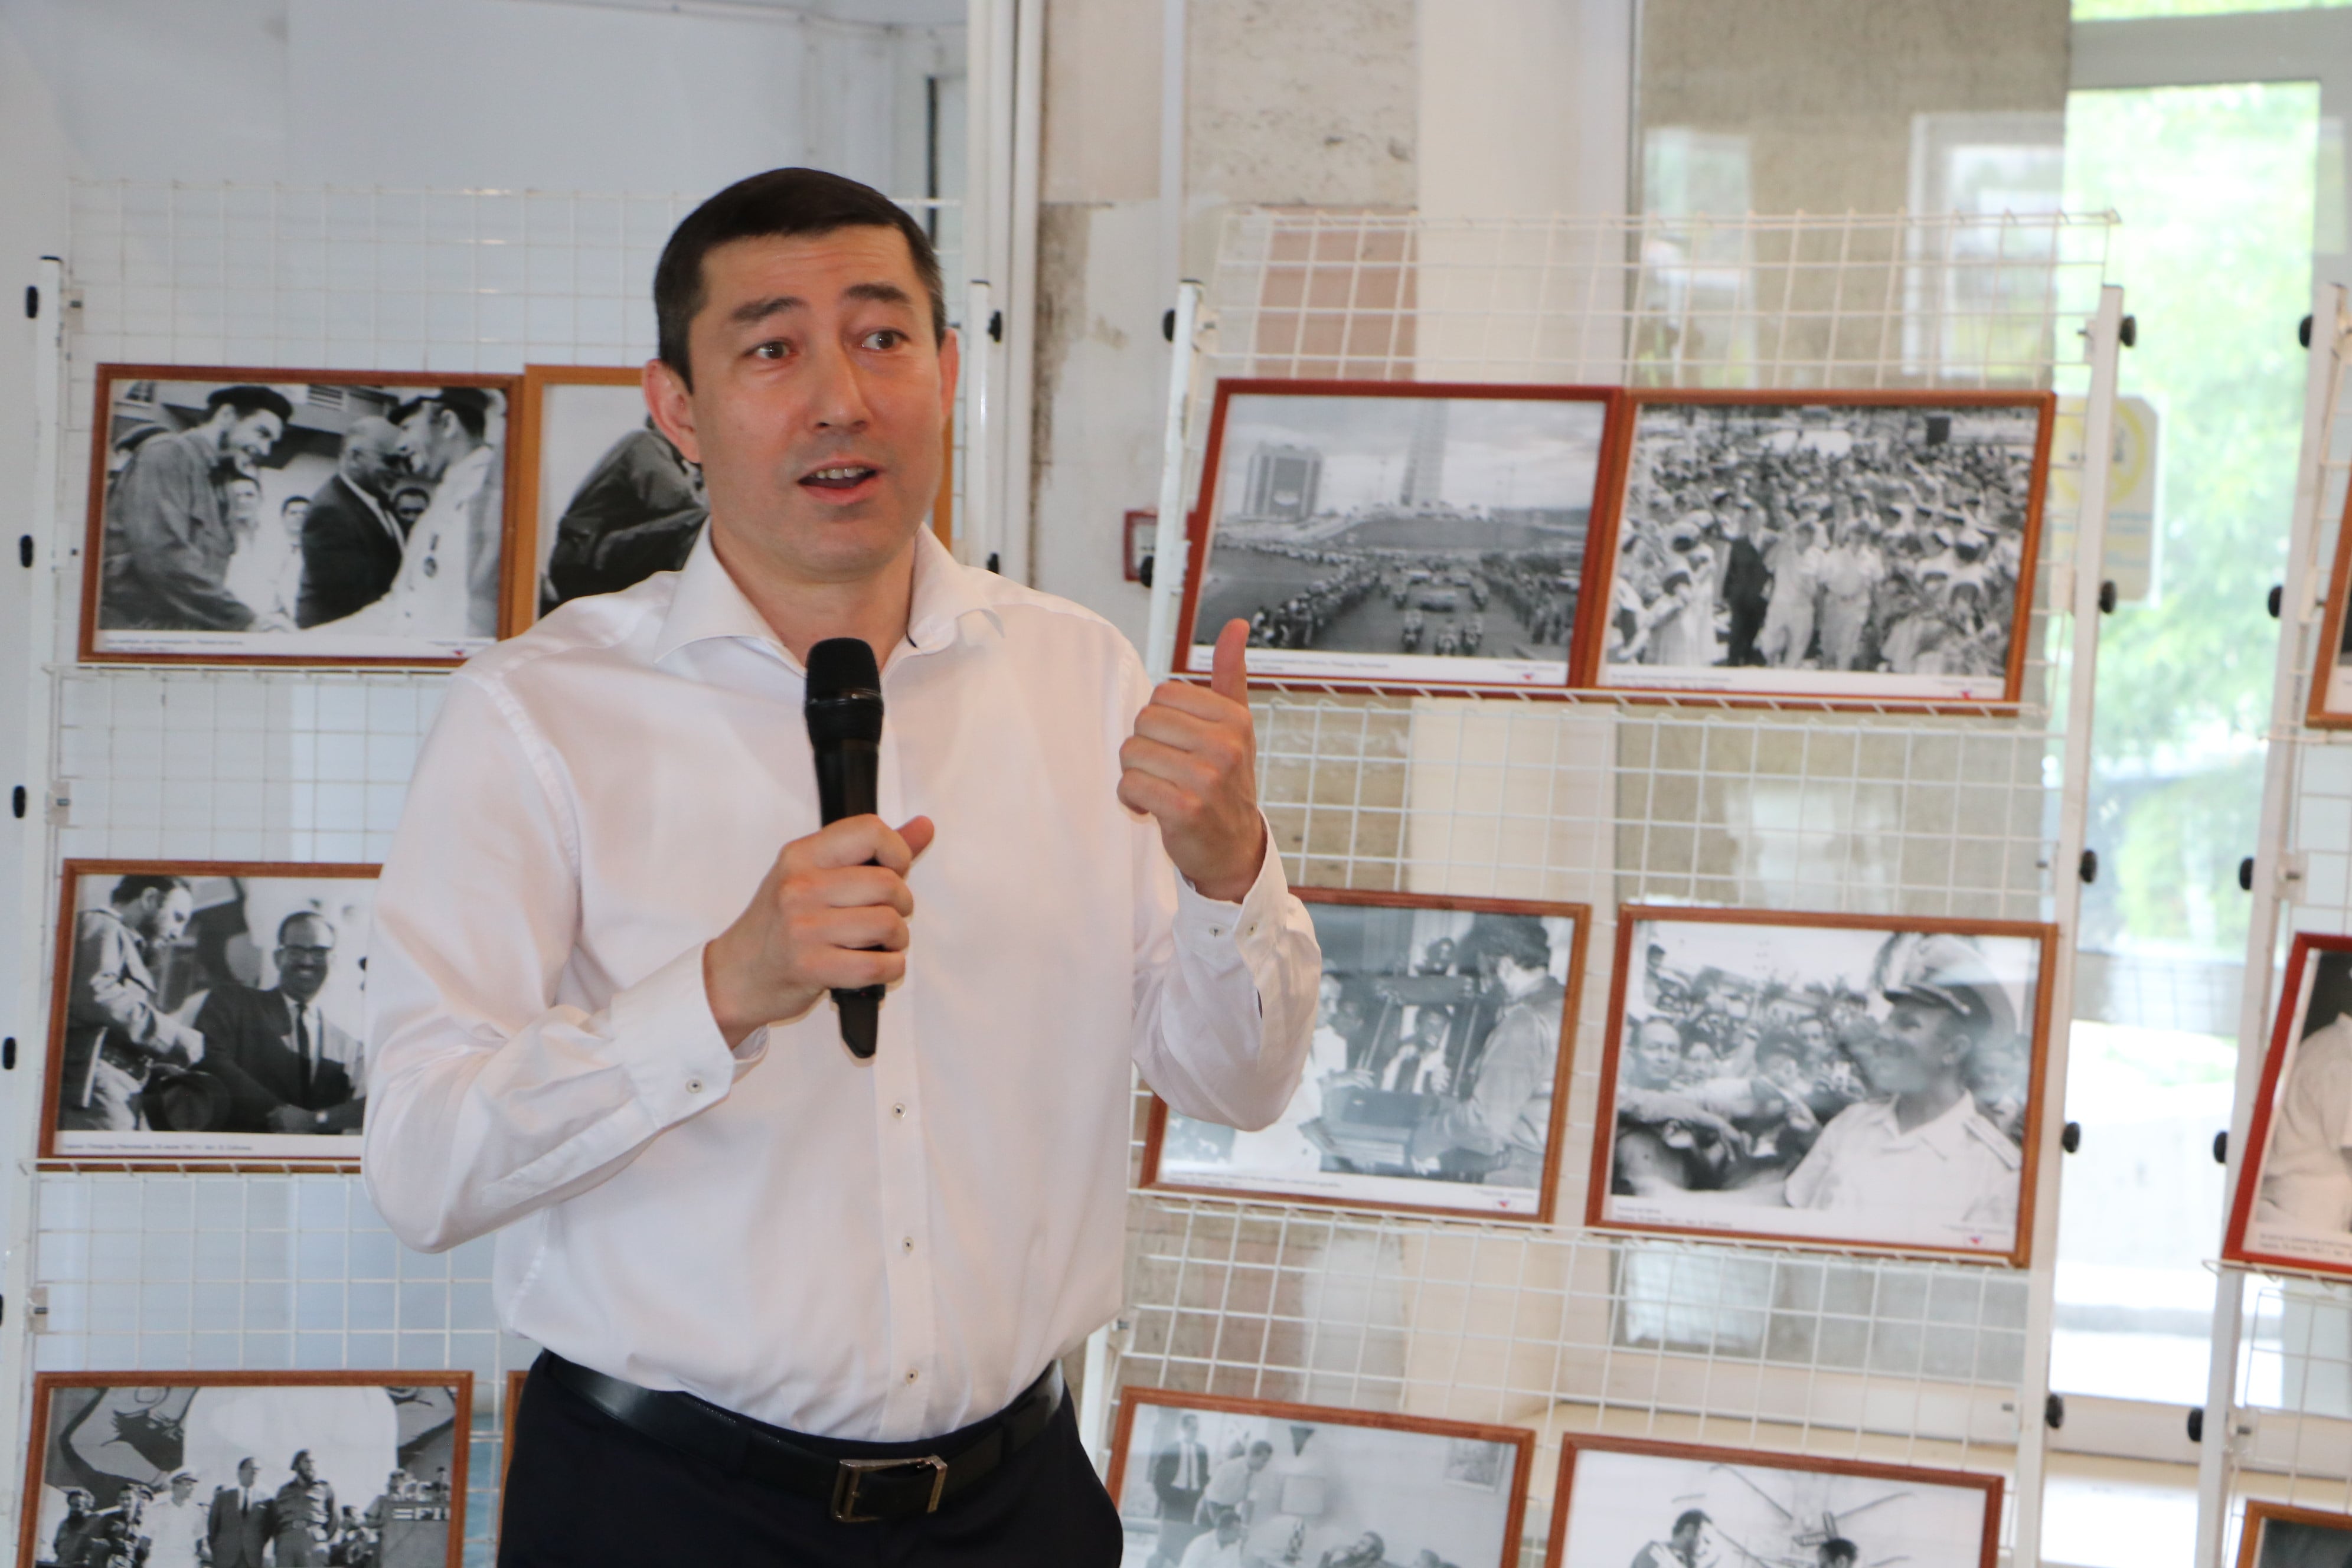 На фото: человек в белой рубашке выступает с микрофоном на фоне стэнда с фотографиями.